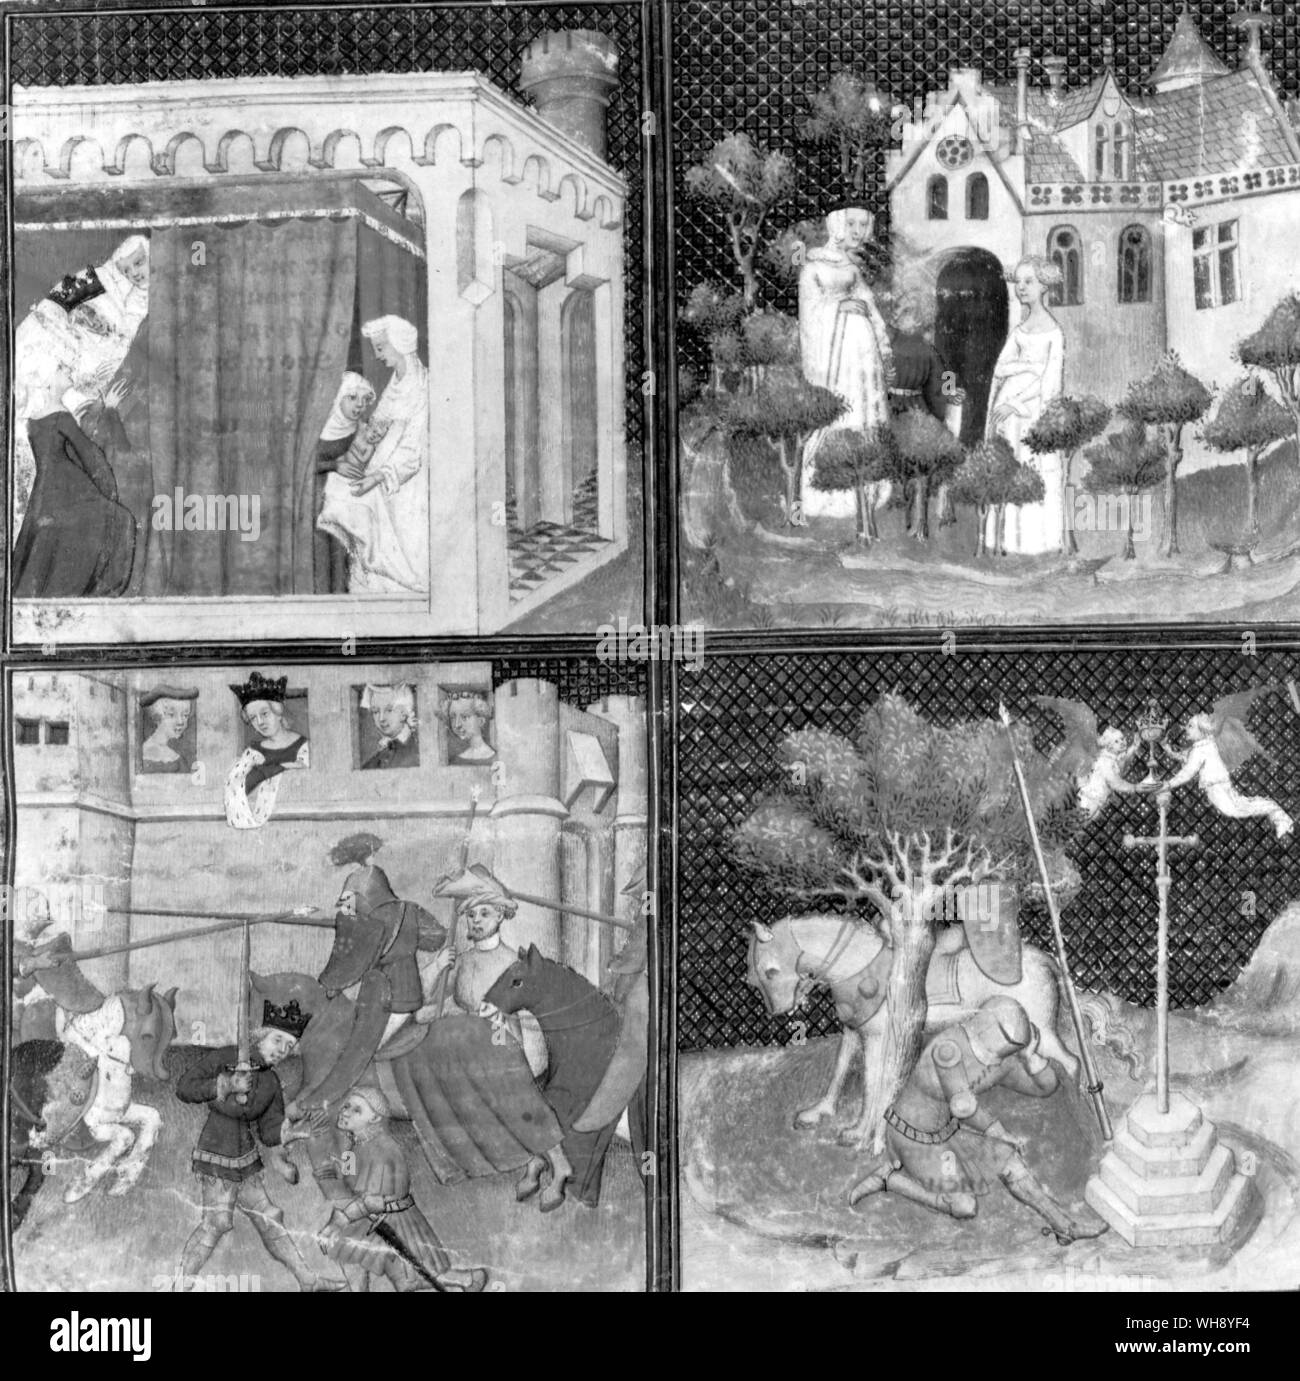 Lancelot, die Geburt, das Leben und die Suche nach dem Heiligen Gral in vier Miniaturen bei der Eröffnung eines fünfzehnten Jahrhundert französische Handschrift dargestellt Stockfoto